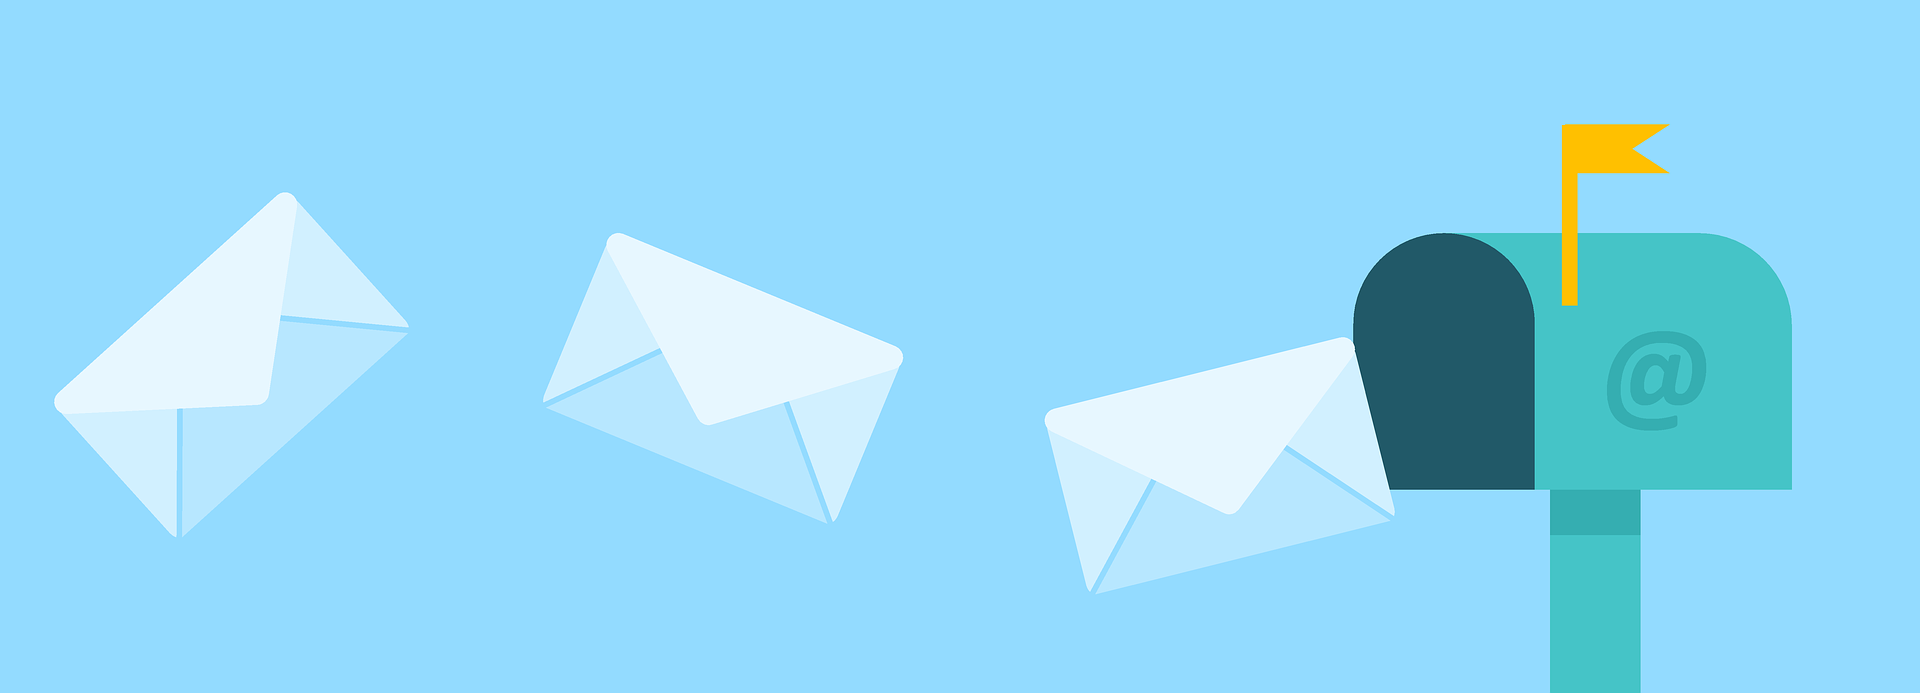 envelopes going into a mailbox